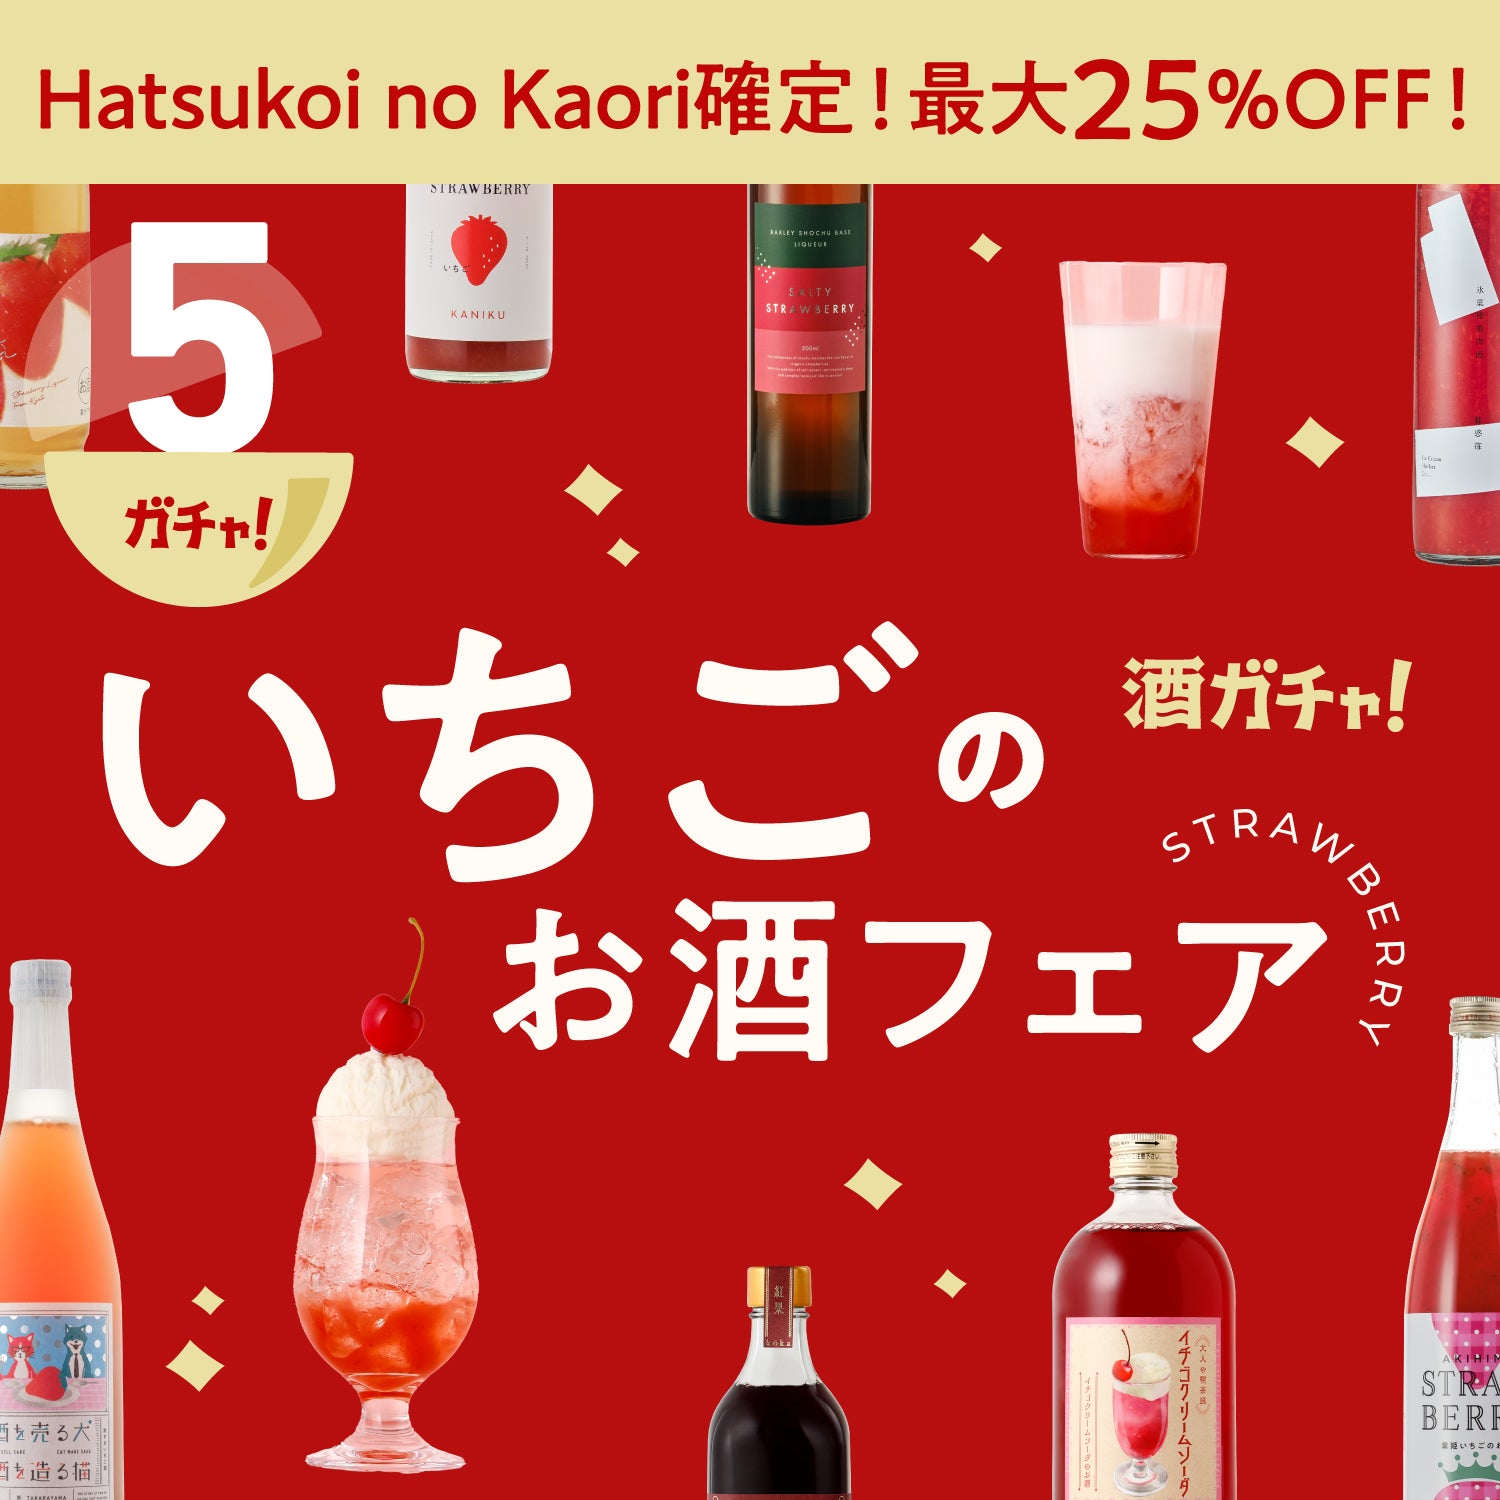 Hatsukoi no kaori確定酒ガチャ